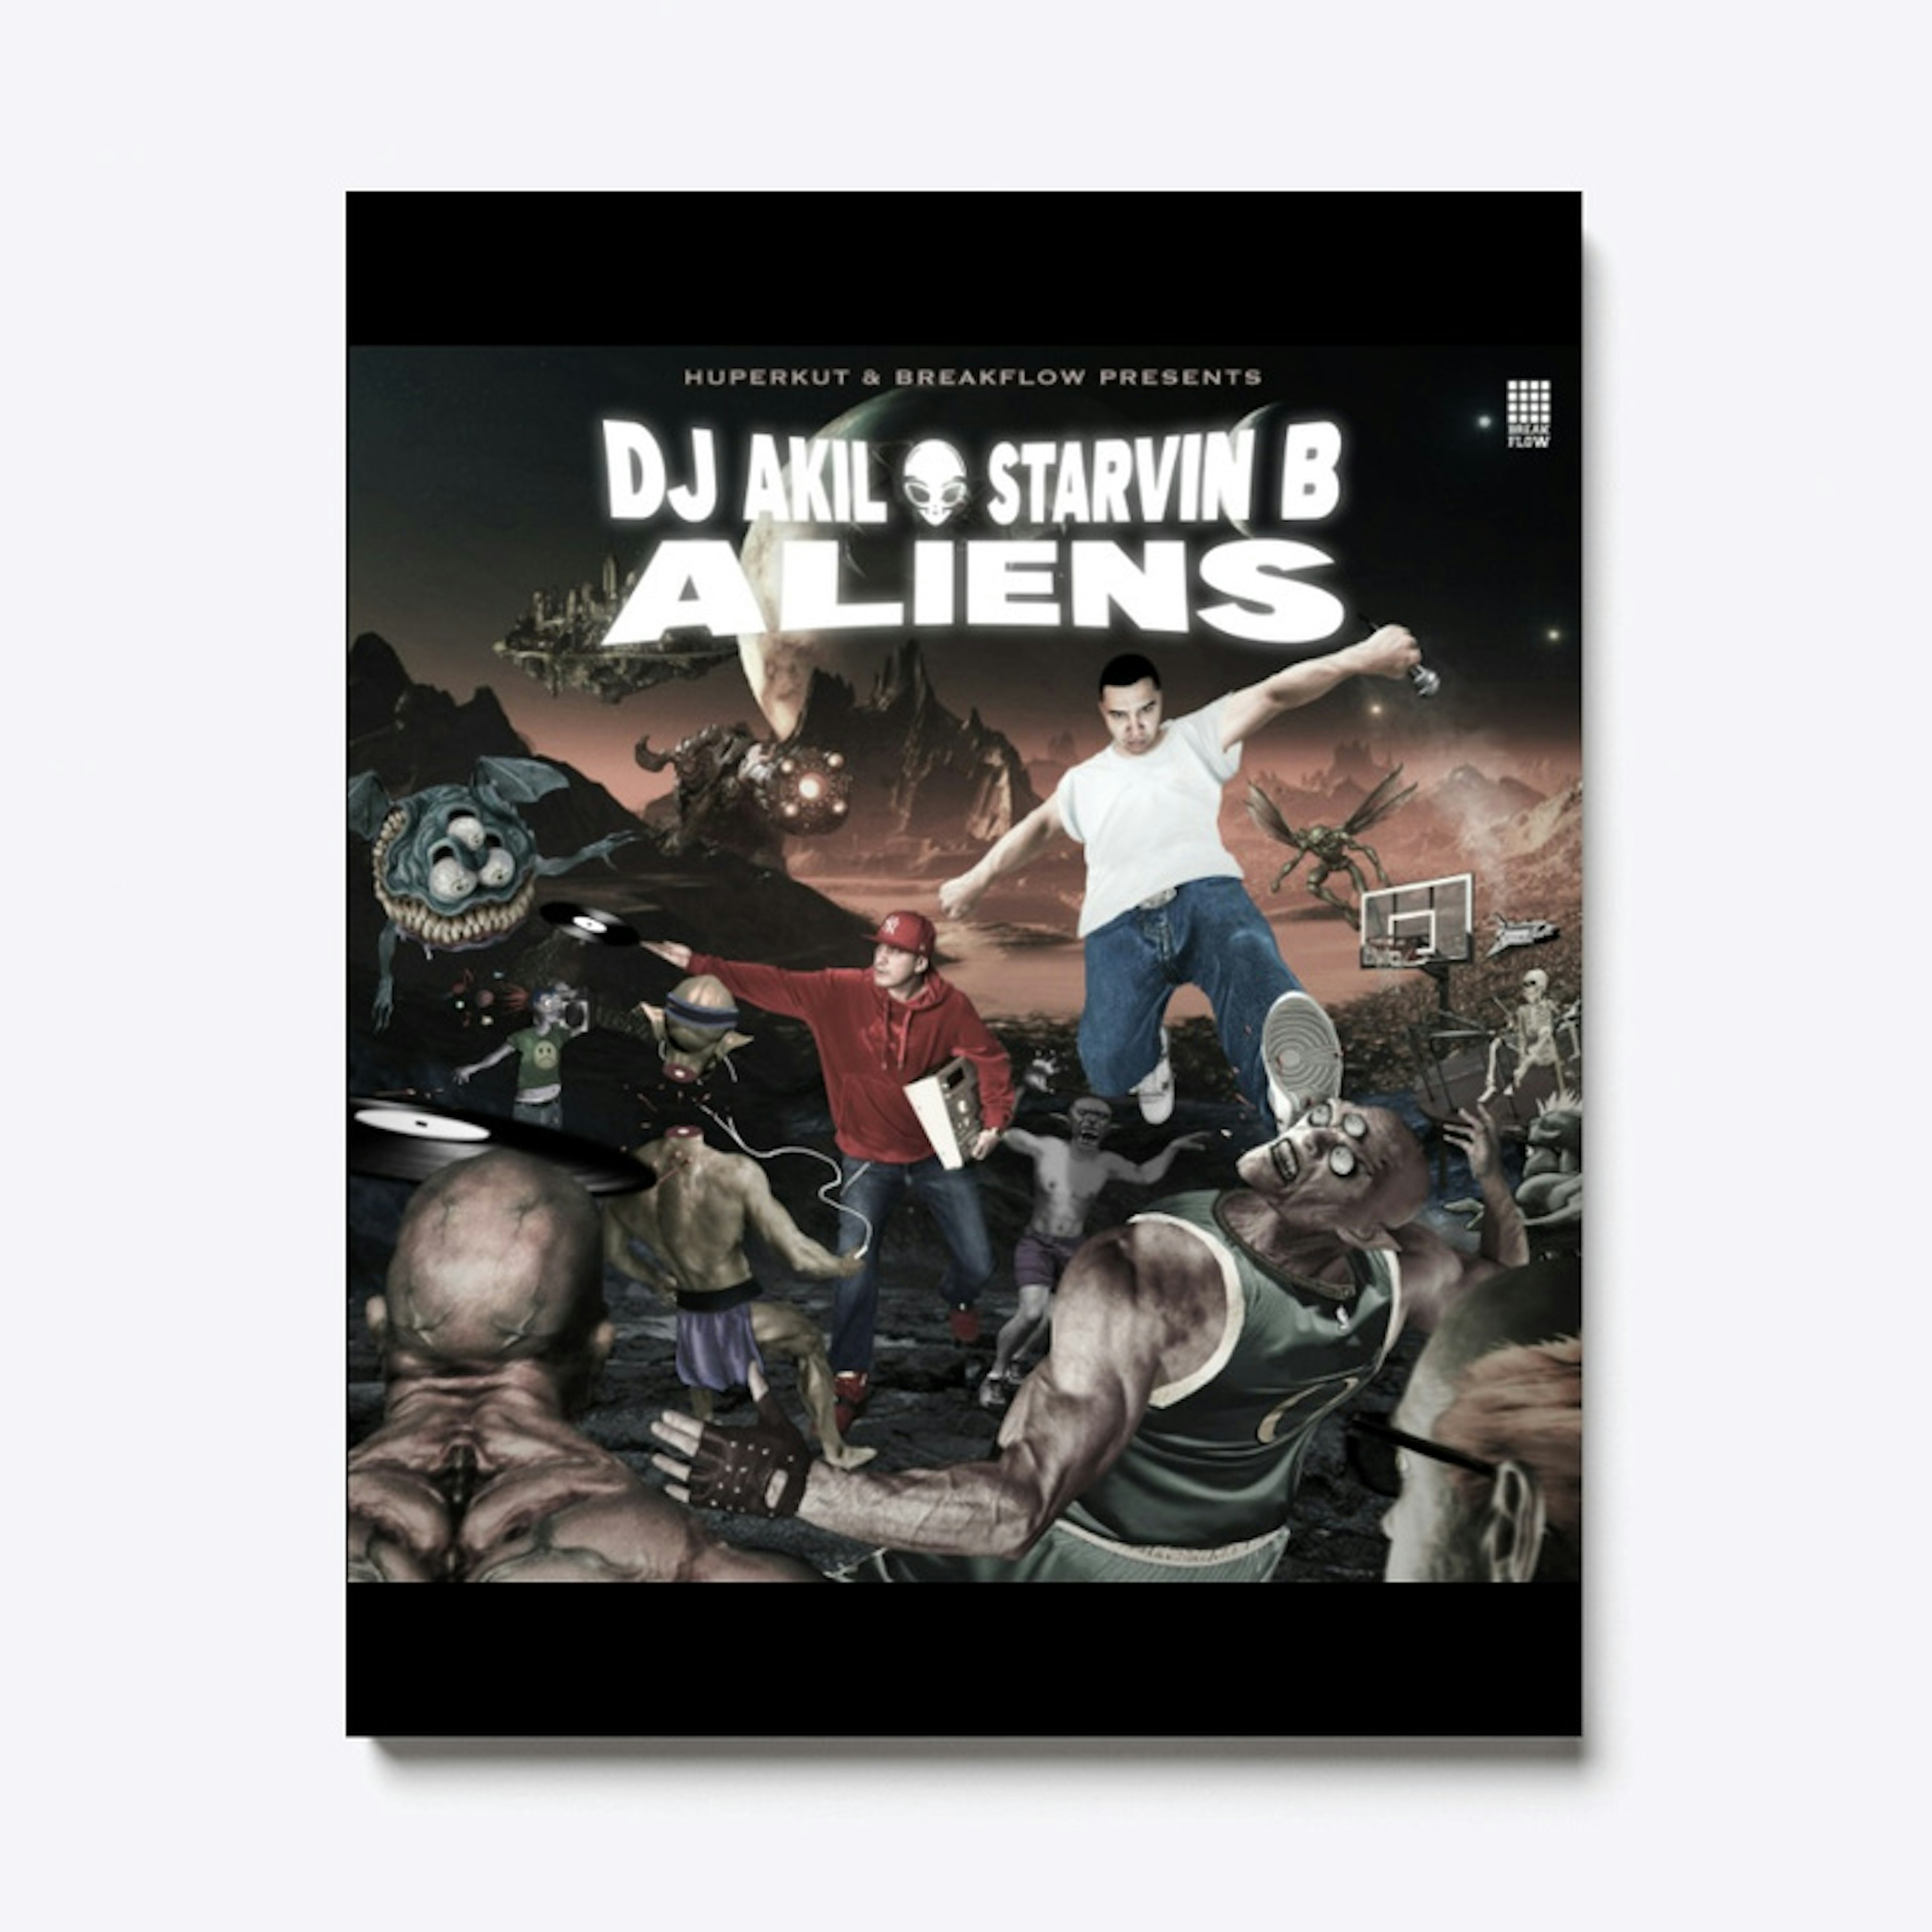 DJ AKIL & STARVIN B  Aliens